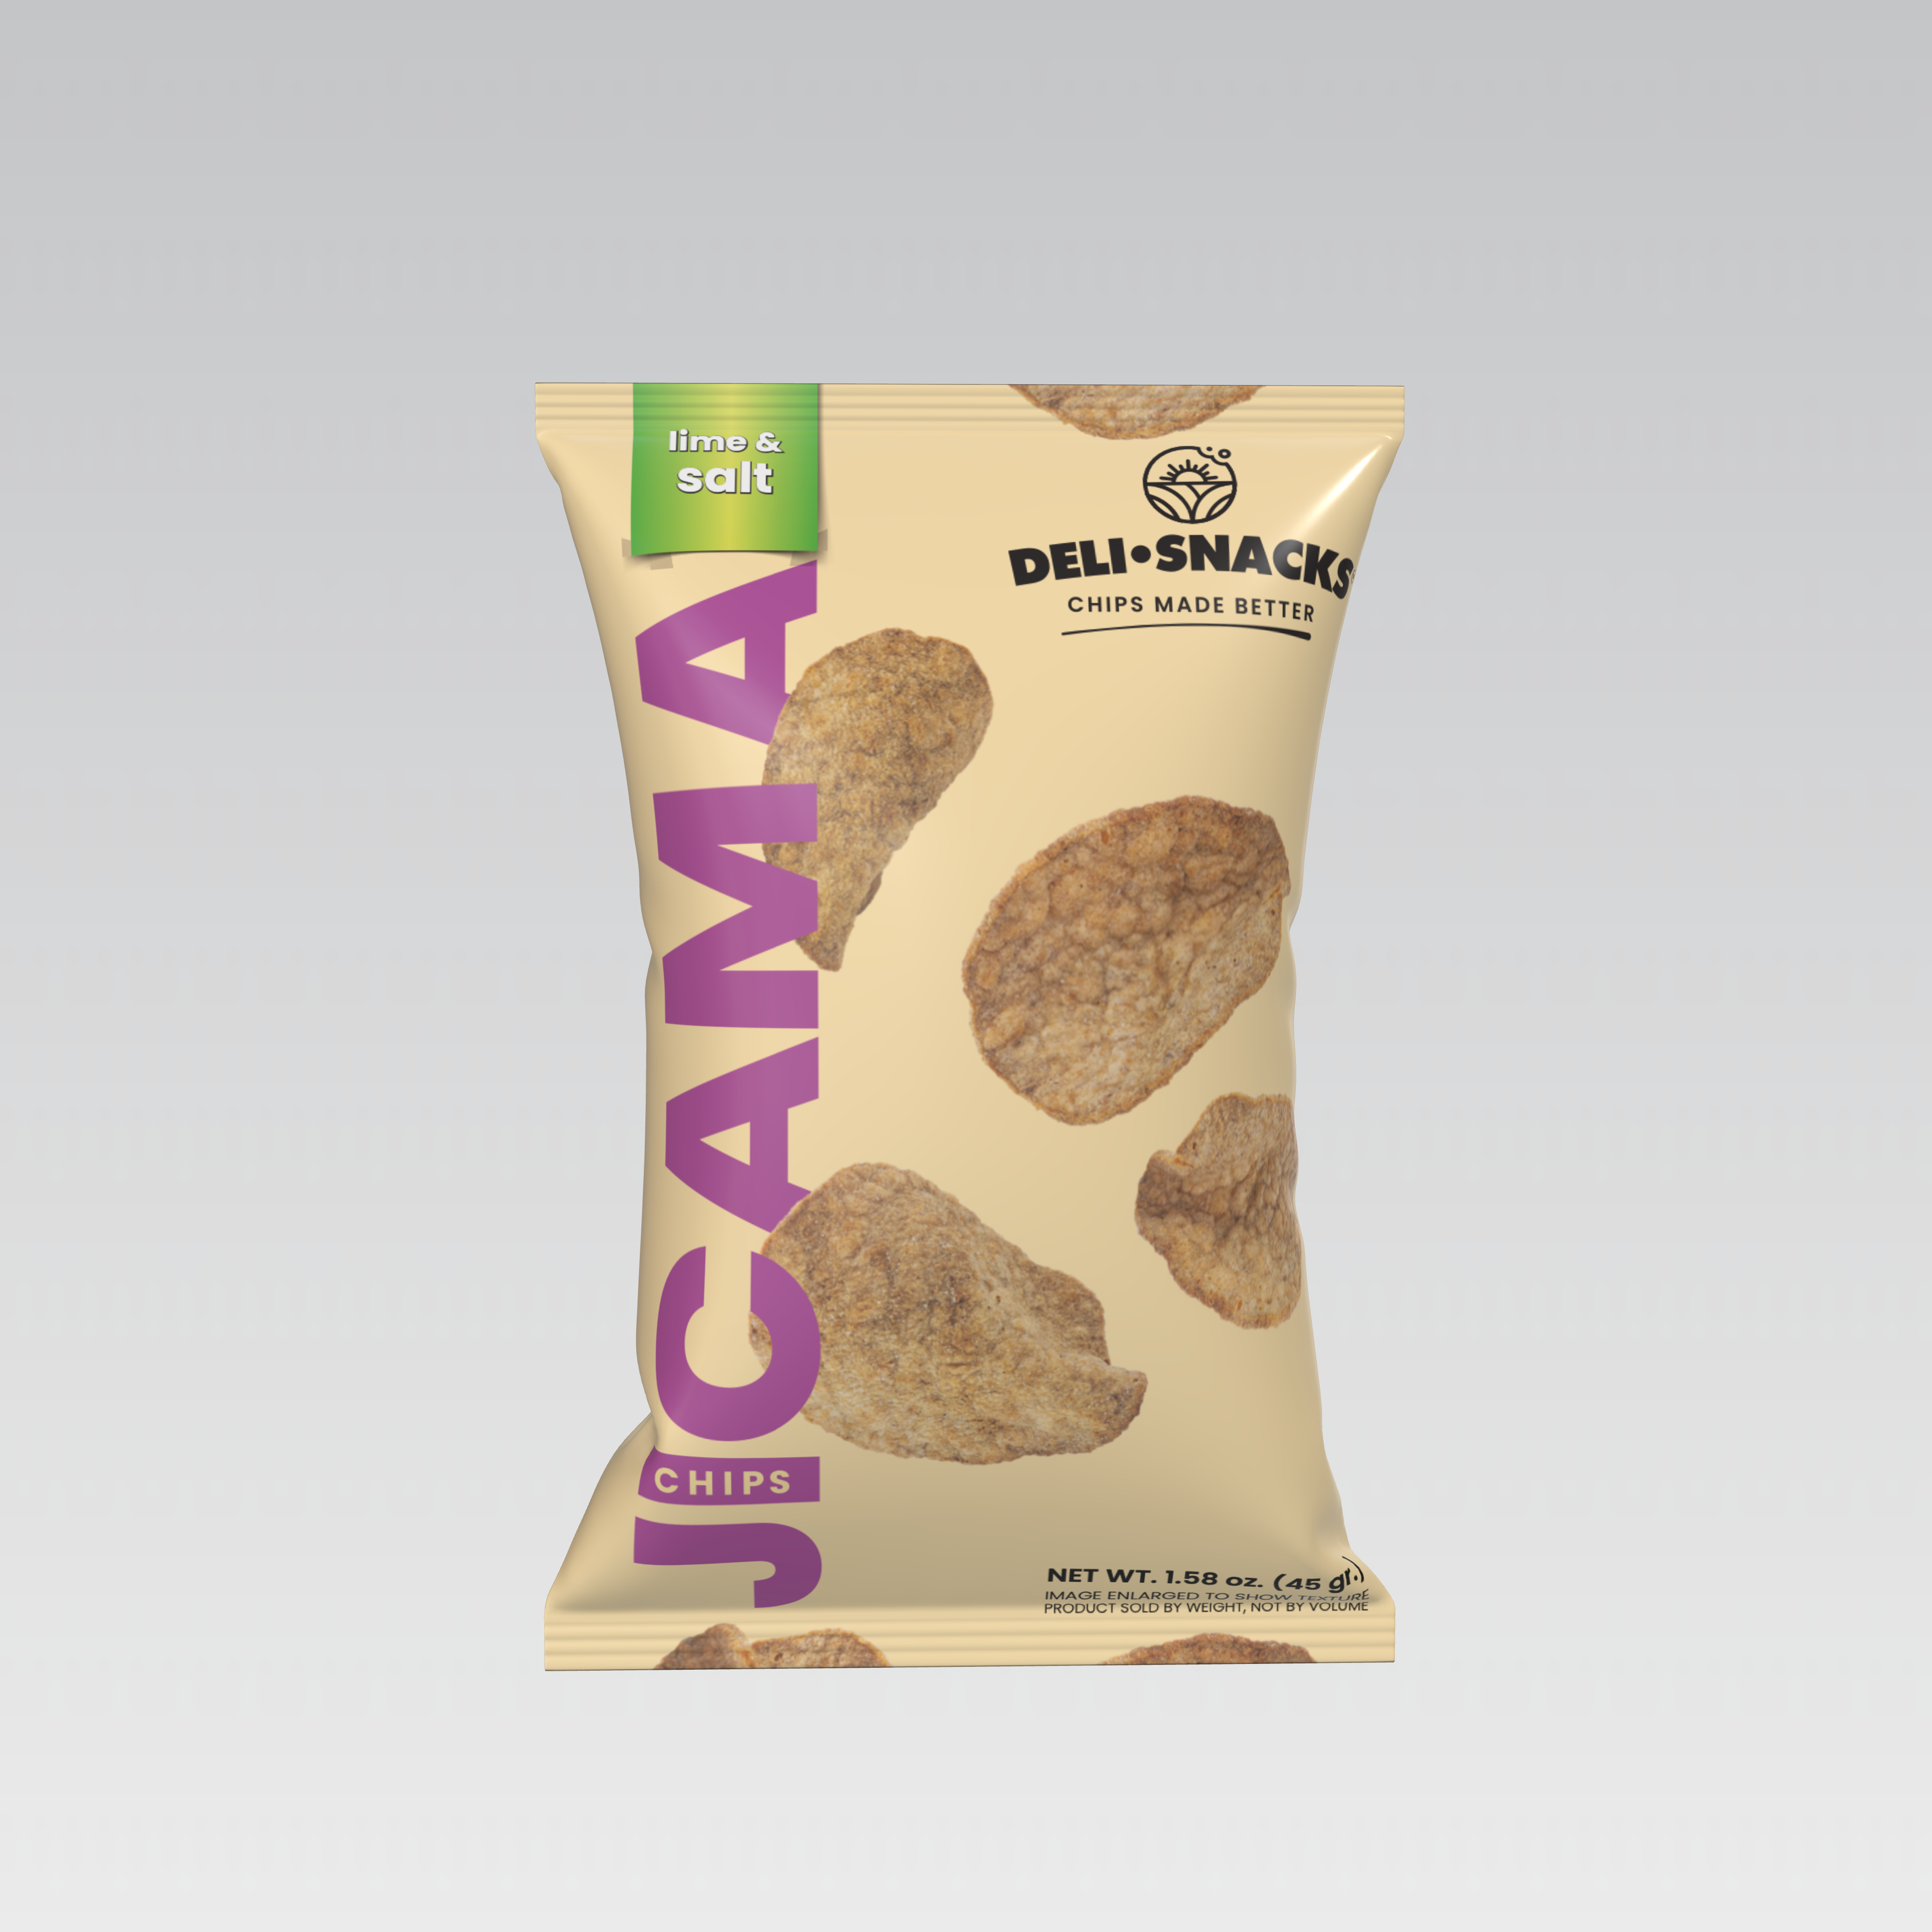 Deli Snacks Crispy Jicama chips lime and salt flavor